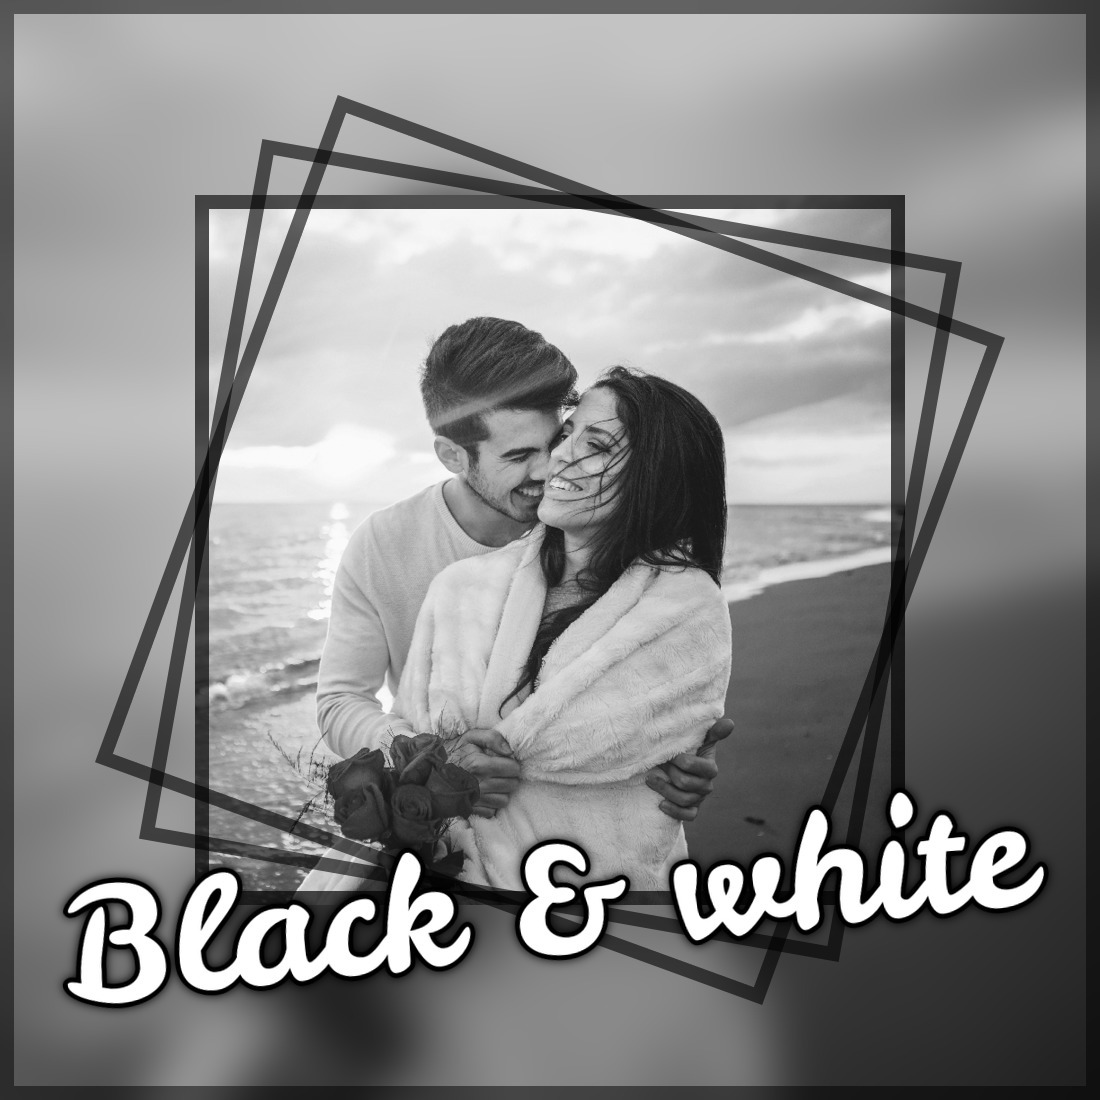 Black & white Montage photo